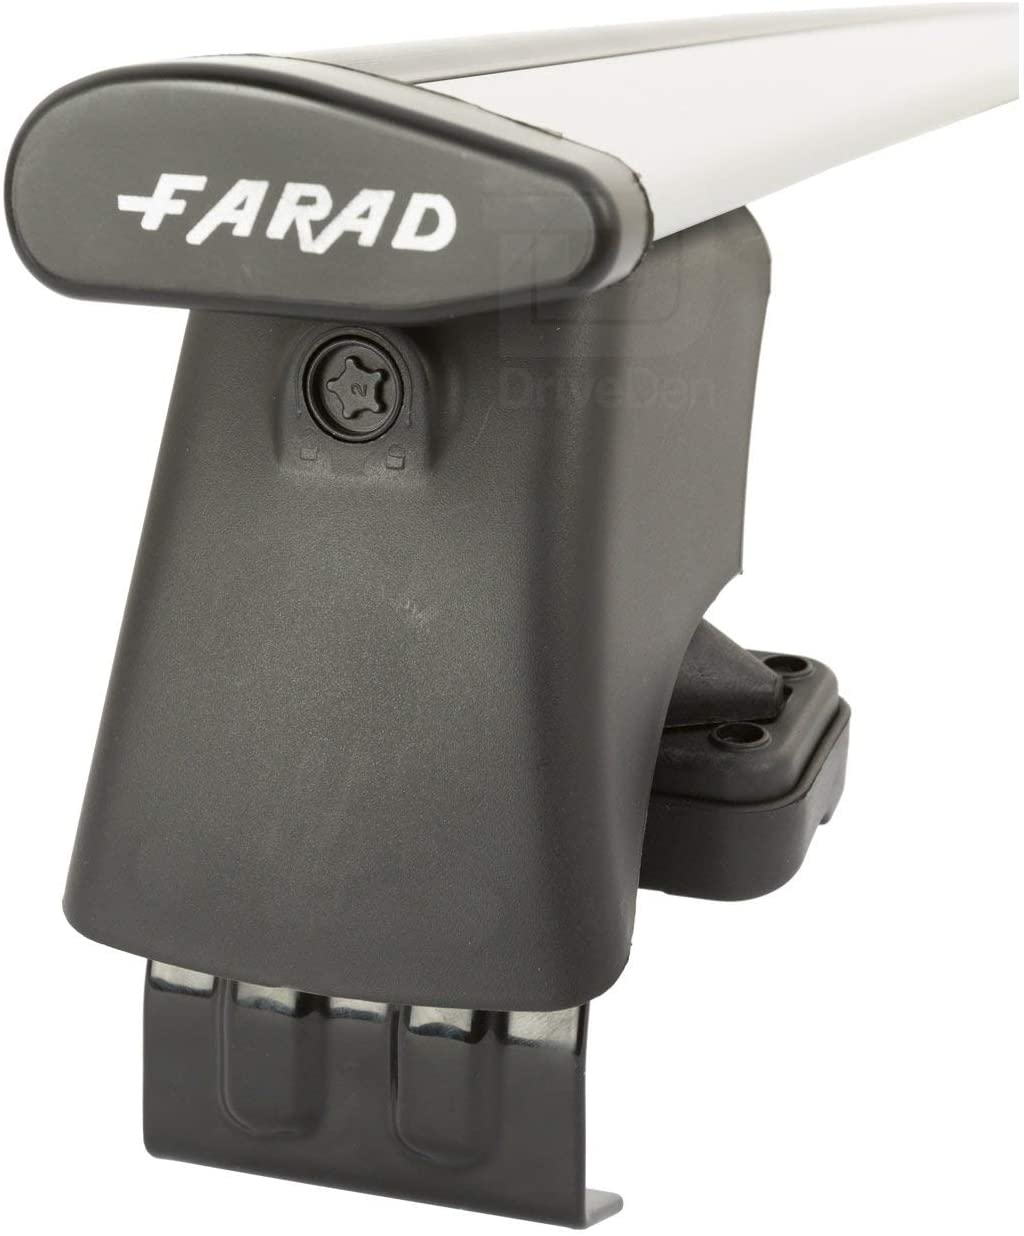 FARAD-Kit H2 per barre portatutto - Peugeot 308 (T51) 2022> (senza corrimano)